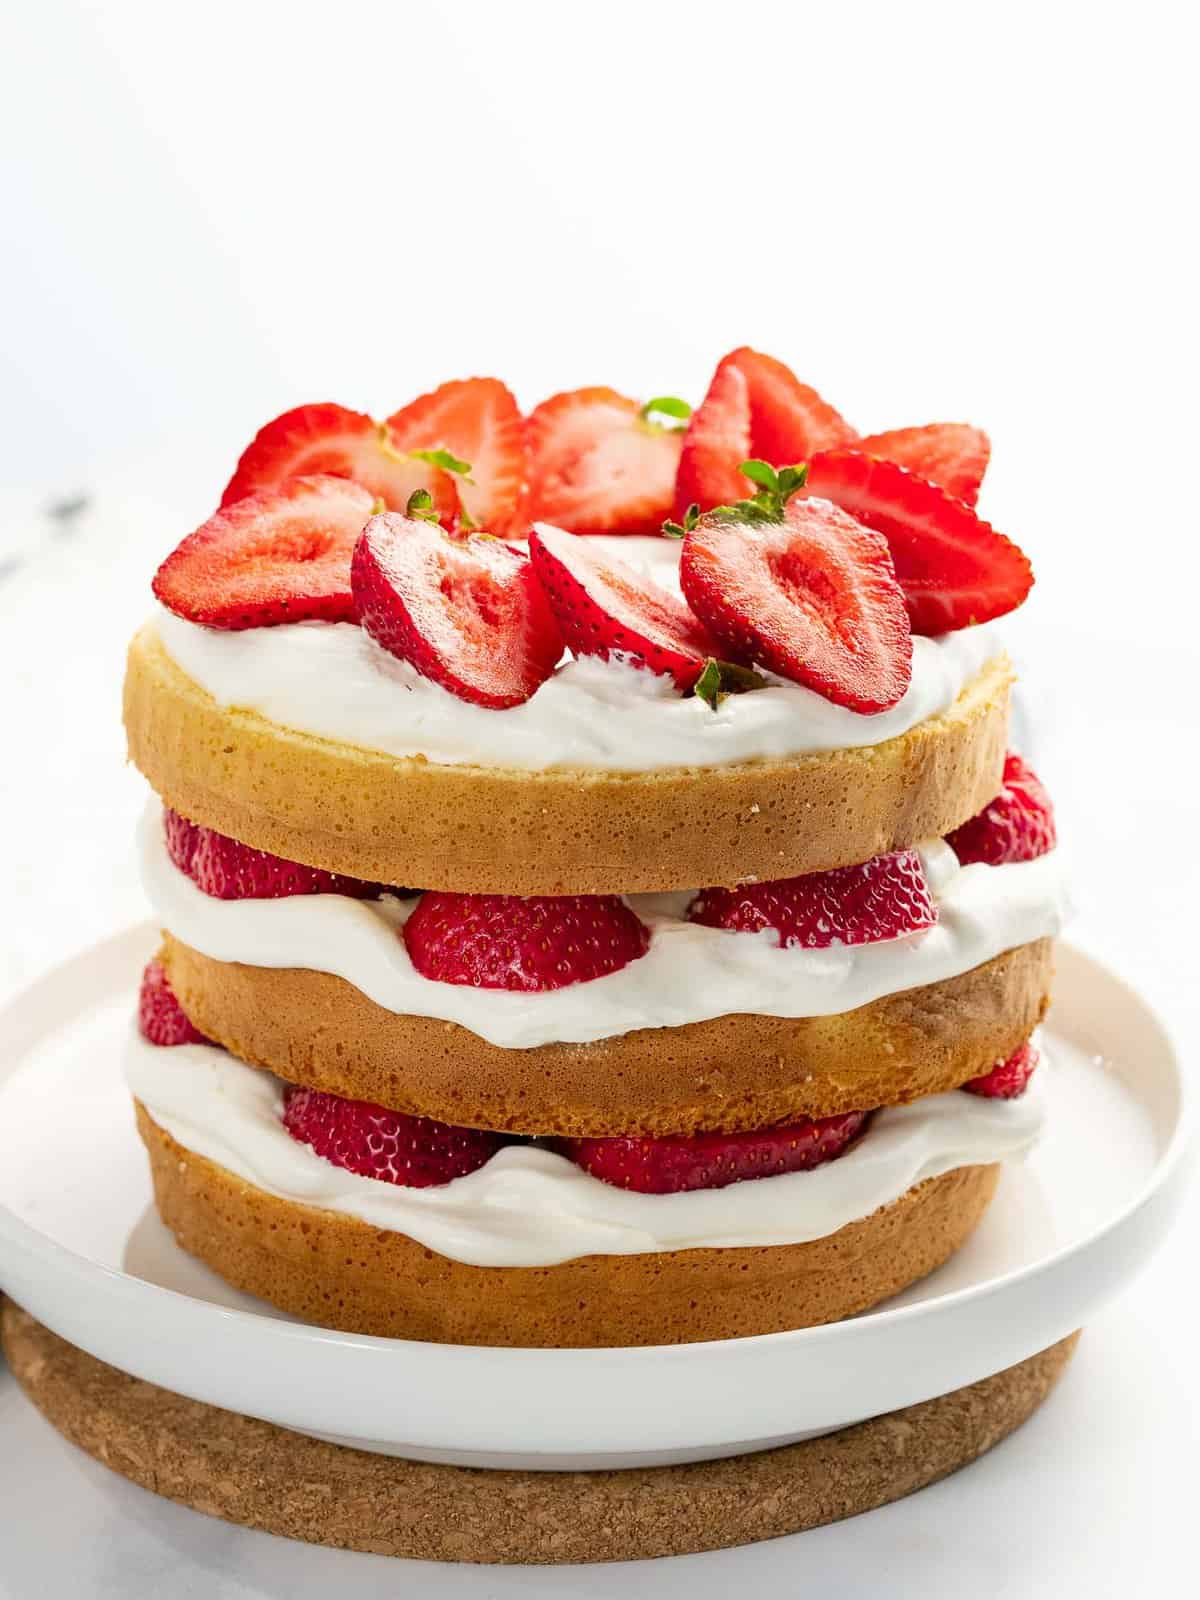 Fresh strawberry cake with fresh strawberries, whipped cream, and layered cake.